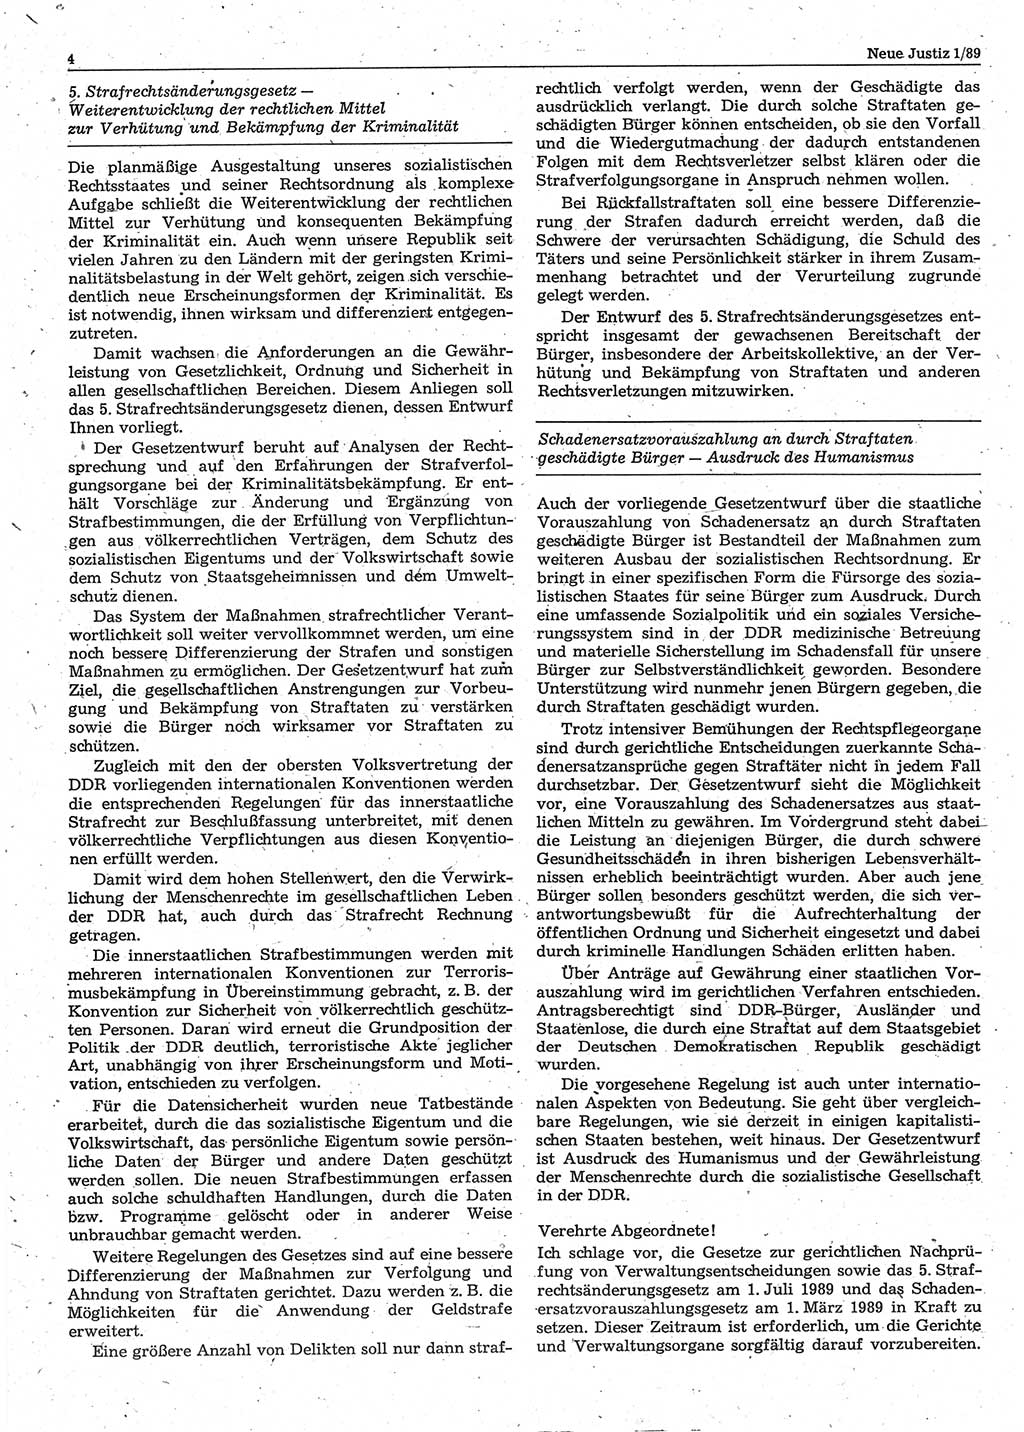 Neue Justiz (NJ), Zeitschrift für sozialistisches Recht und Gesetzlichkeit [Deutsche Demokratische Republik (DDR)], 43. Jahrgang 1989, Seite 4 (NJ DDR 1989, S. 4)